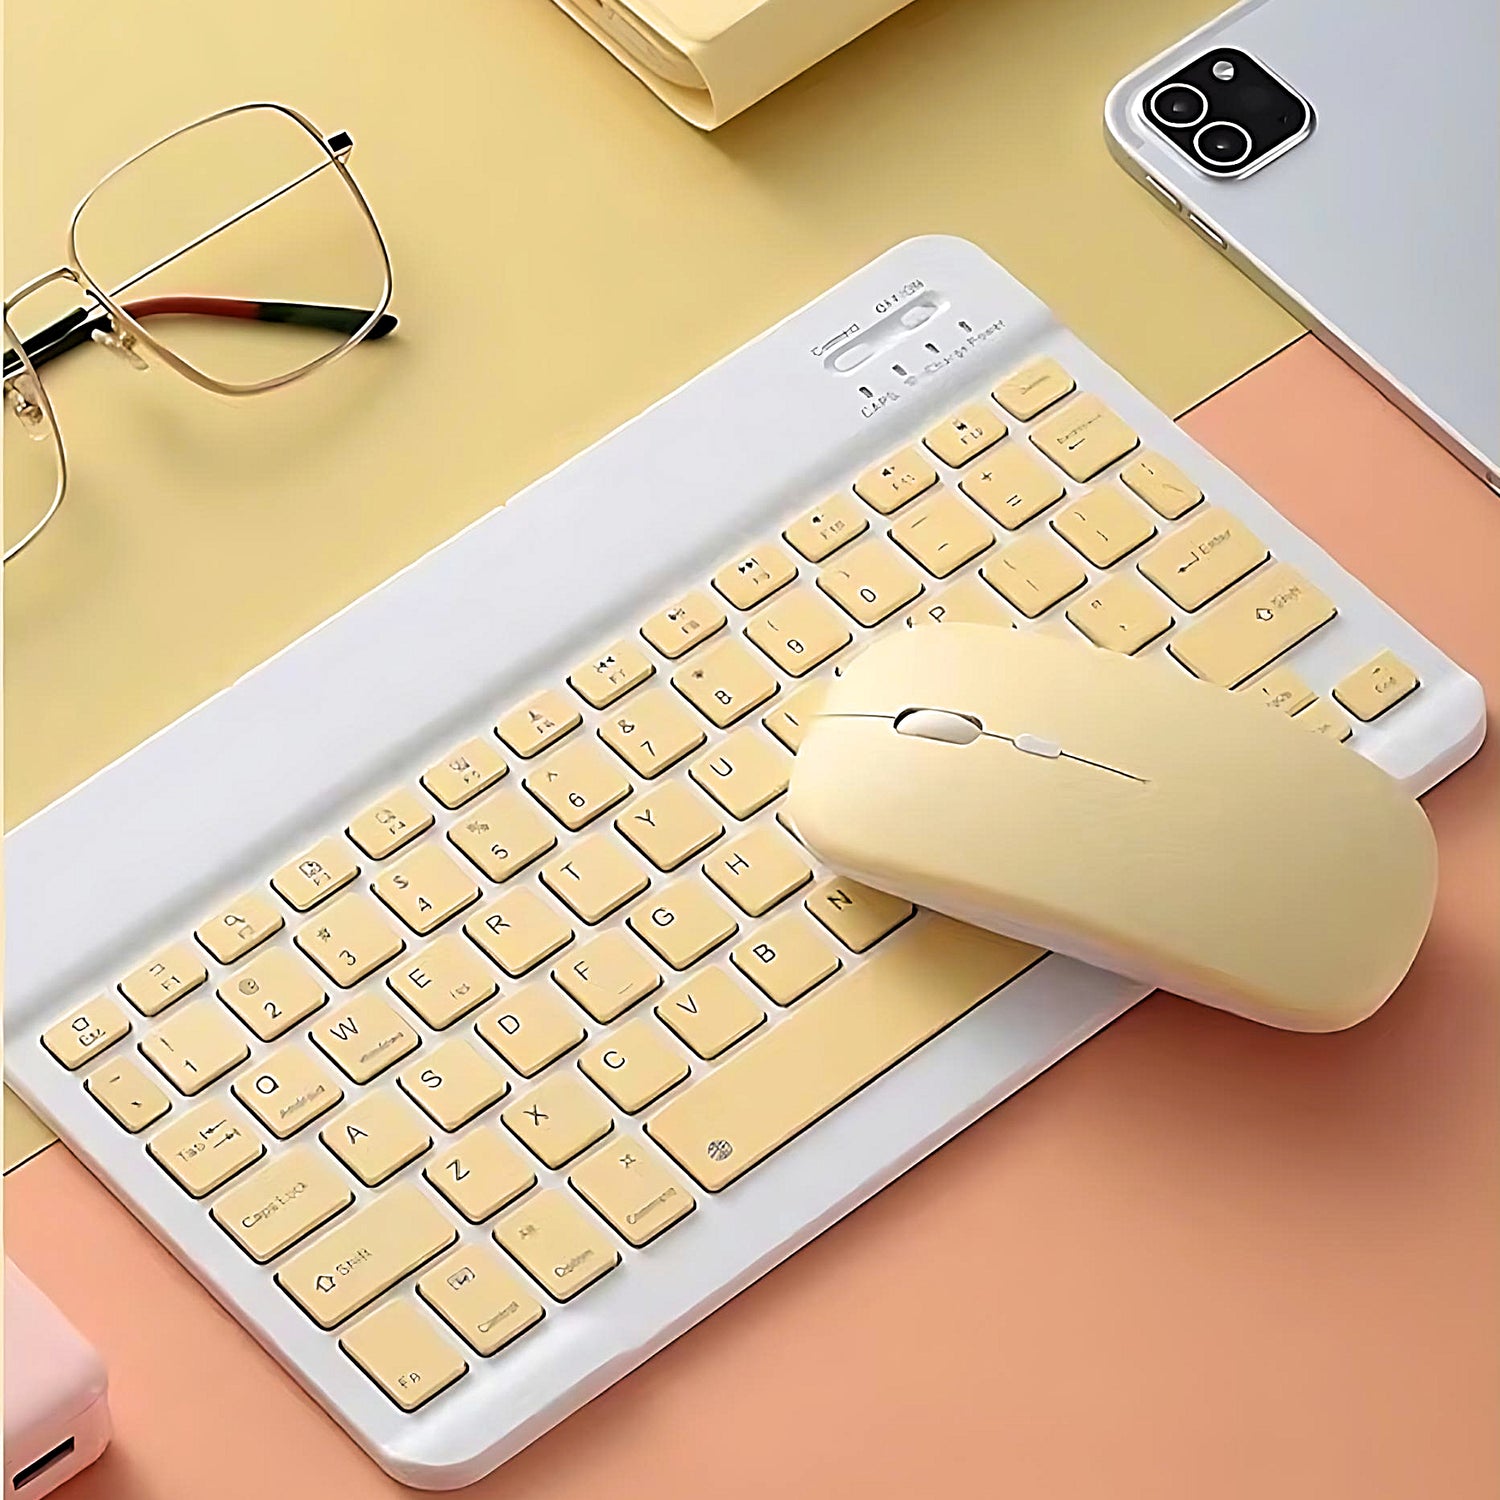 Cómo conectar teclado y ratón al iPad para aumentar tu productividad con el  dispositivo